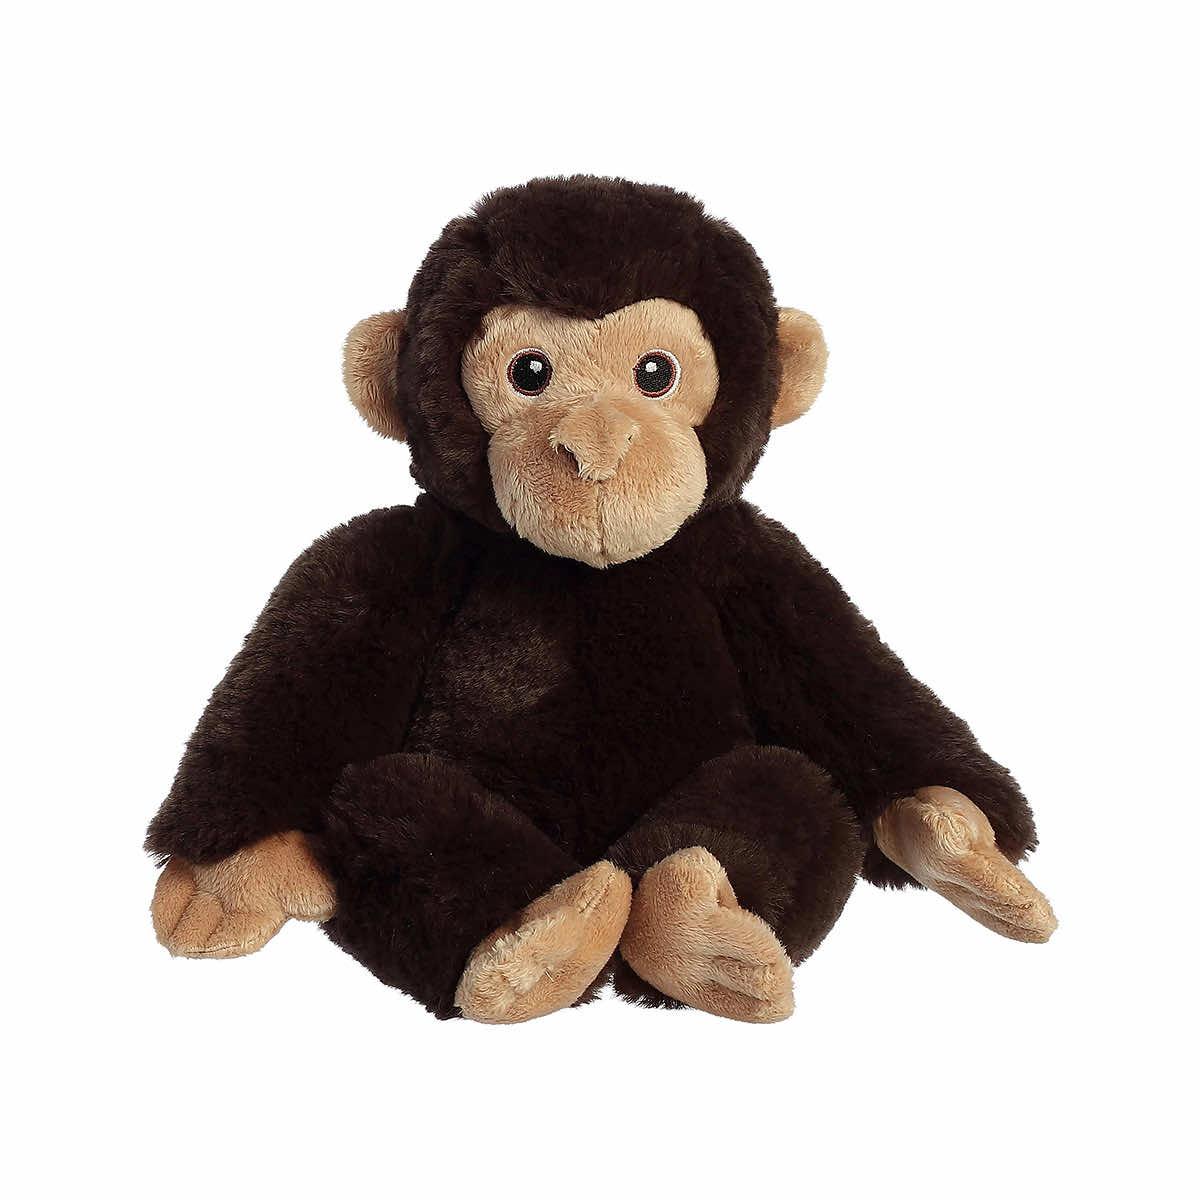  Eco Nation Chimpanzee Plush Toy